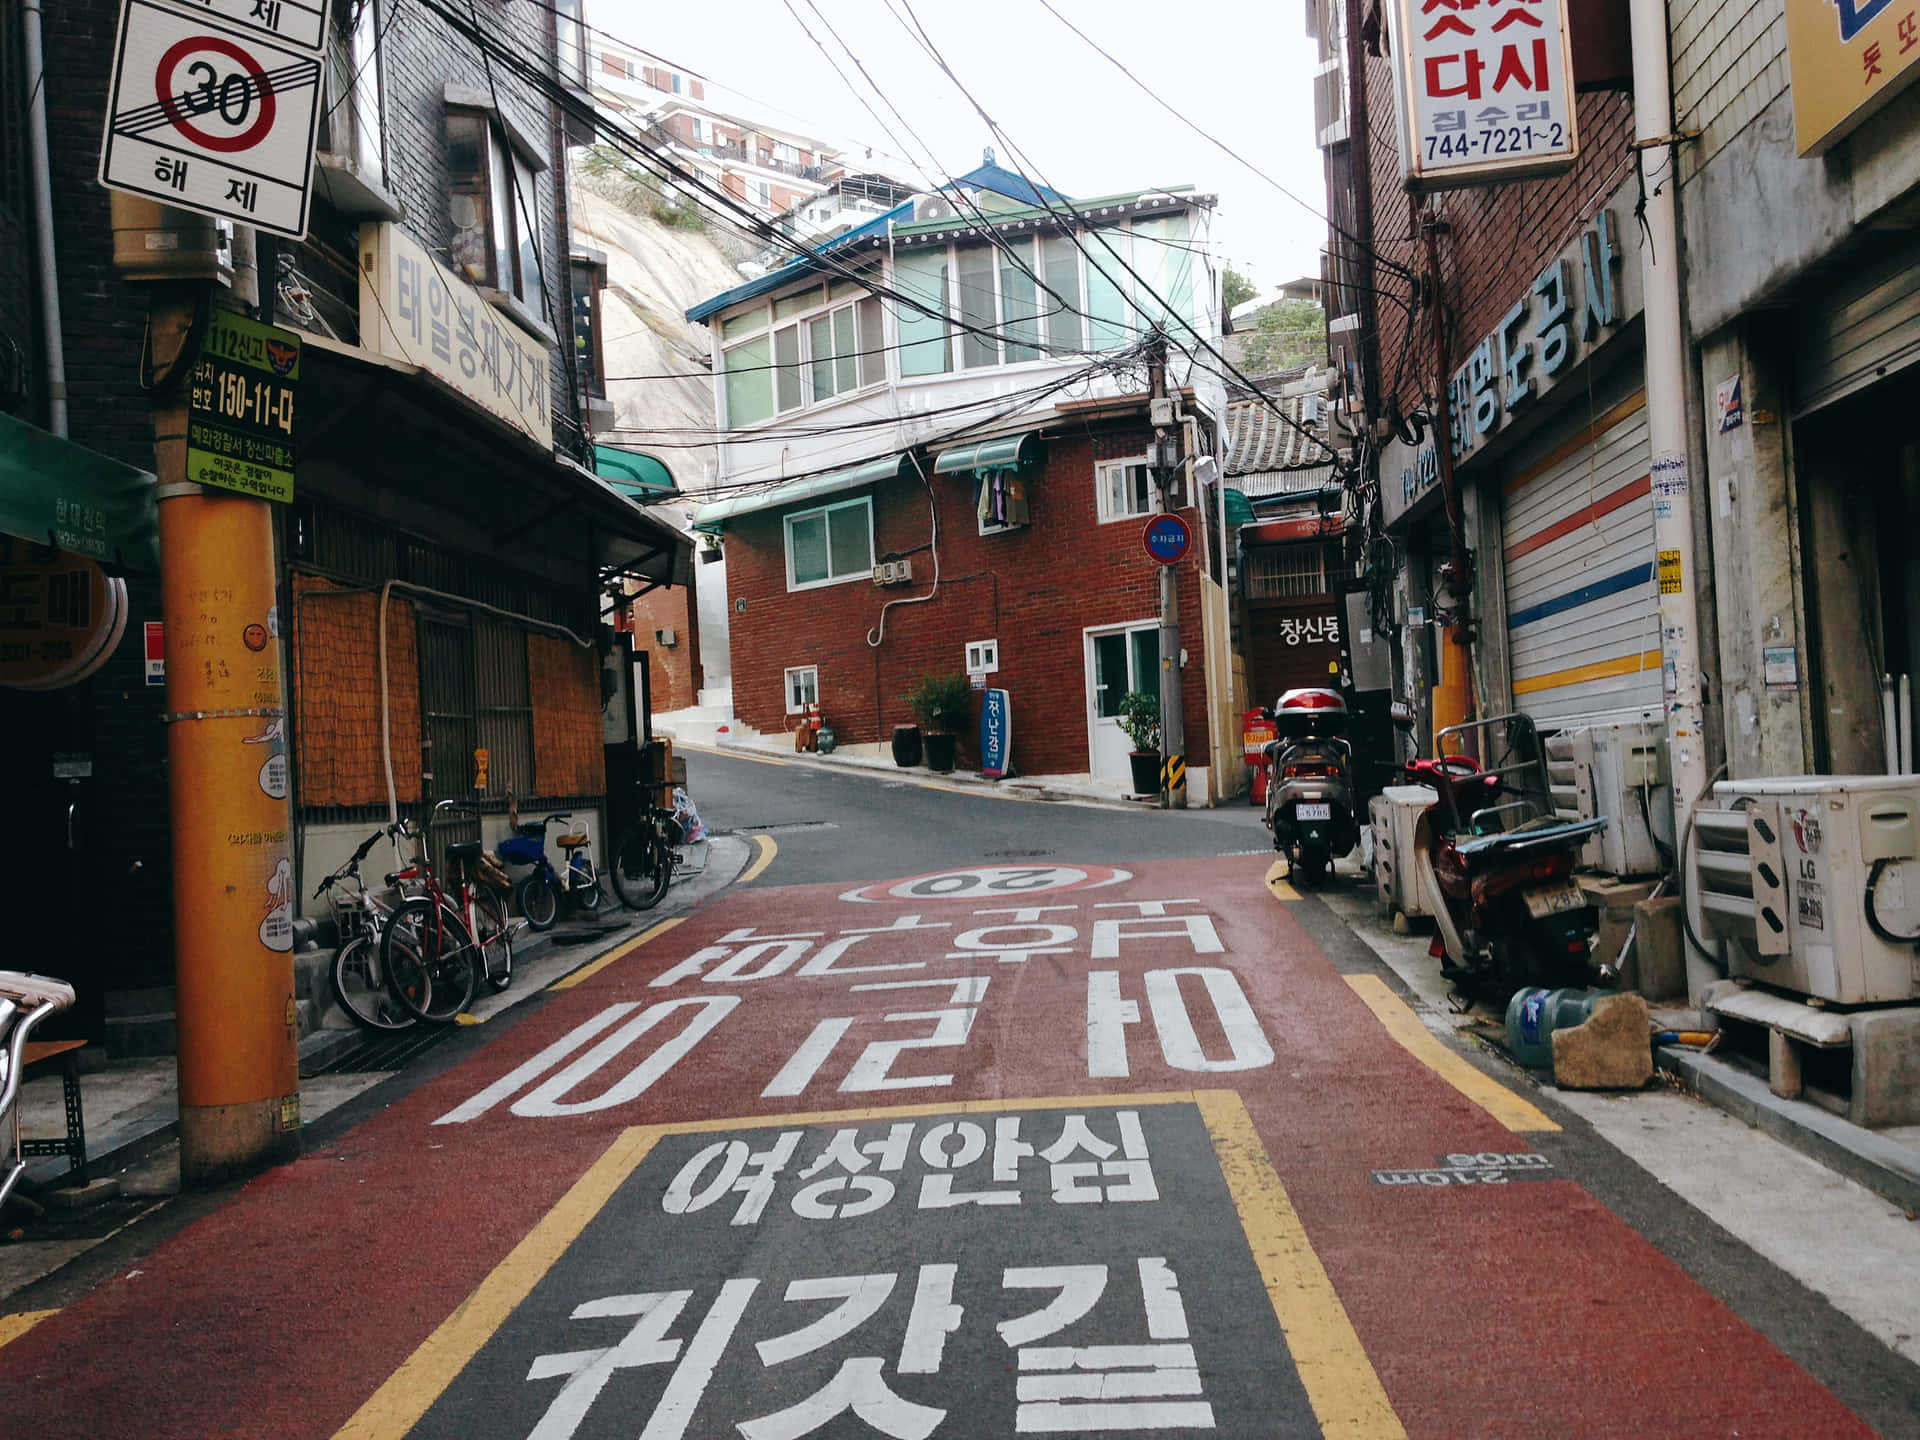 Impresionanteskyline De La Ciudad De Corea Del Sur.